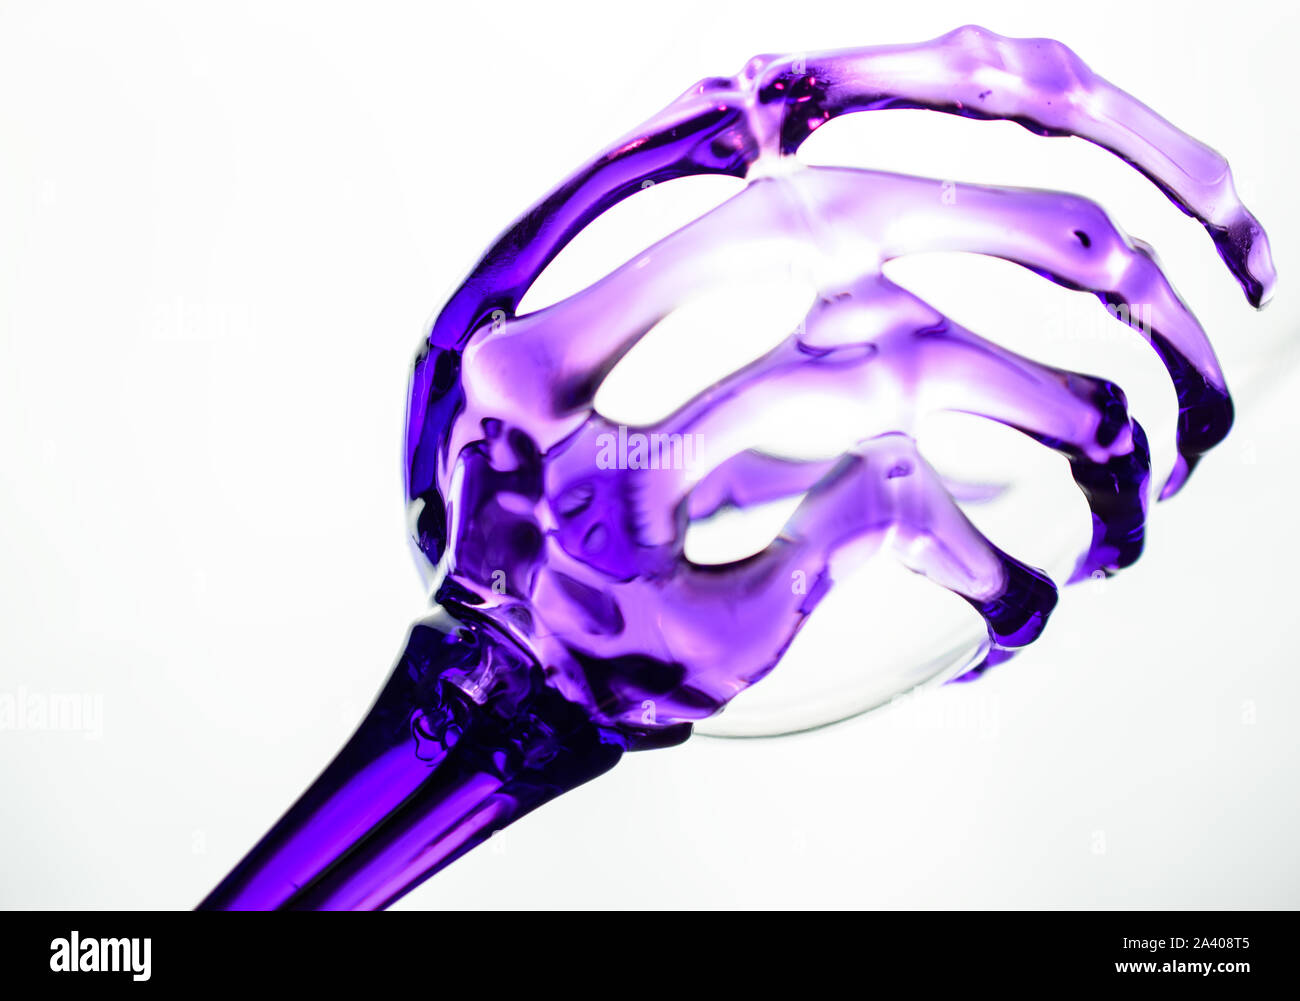 Raffreddare la novità del vino con vetro trasparente scheletro viola del polso e della mano che compongono lo stelo e la Coppa di presa Foto Stock